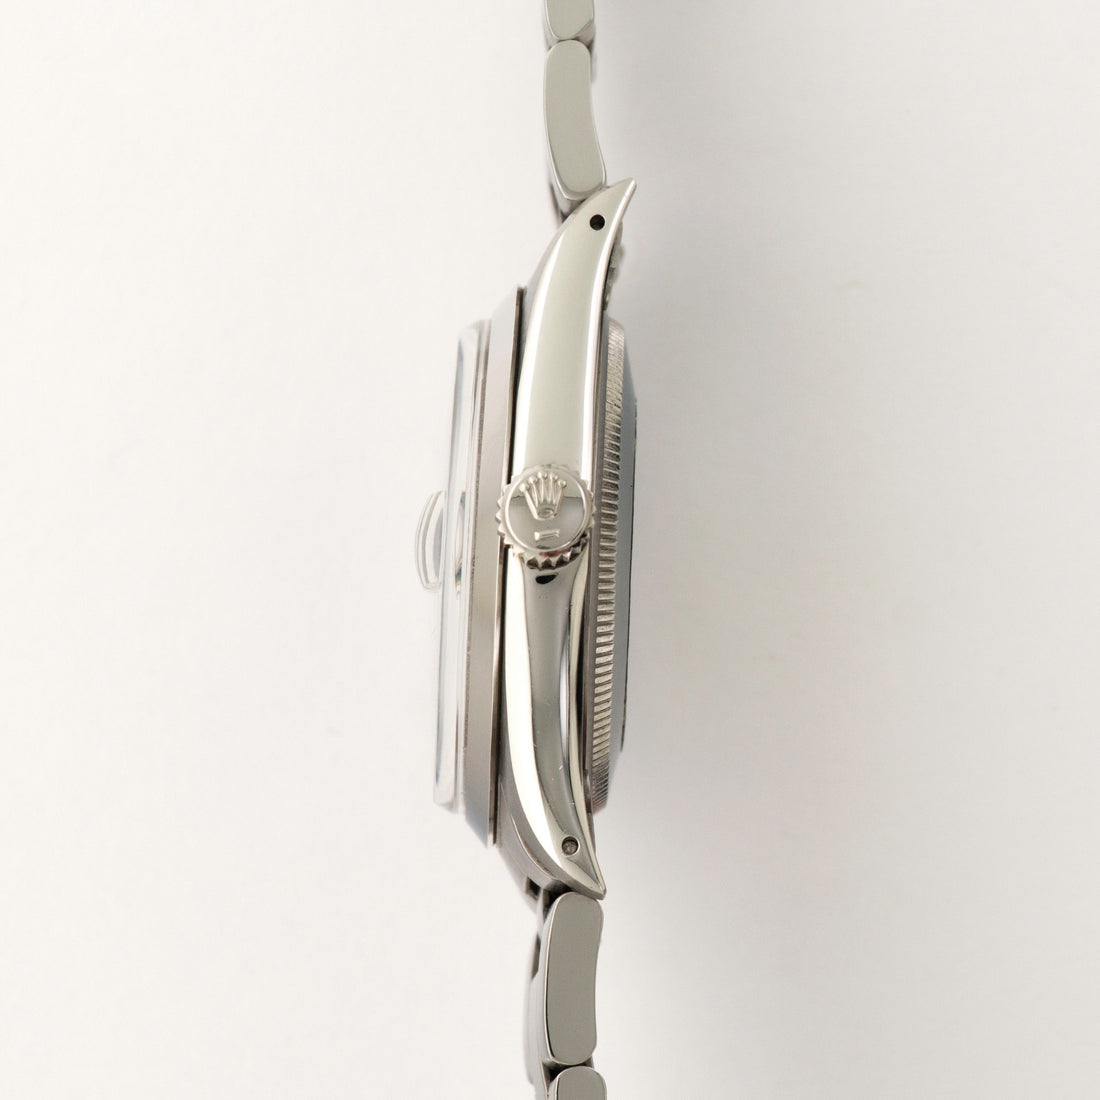 Rolex Steel Date Watch Ref. 1500, with Original Caseback Sticker